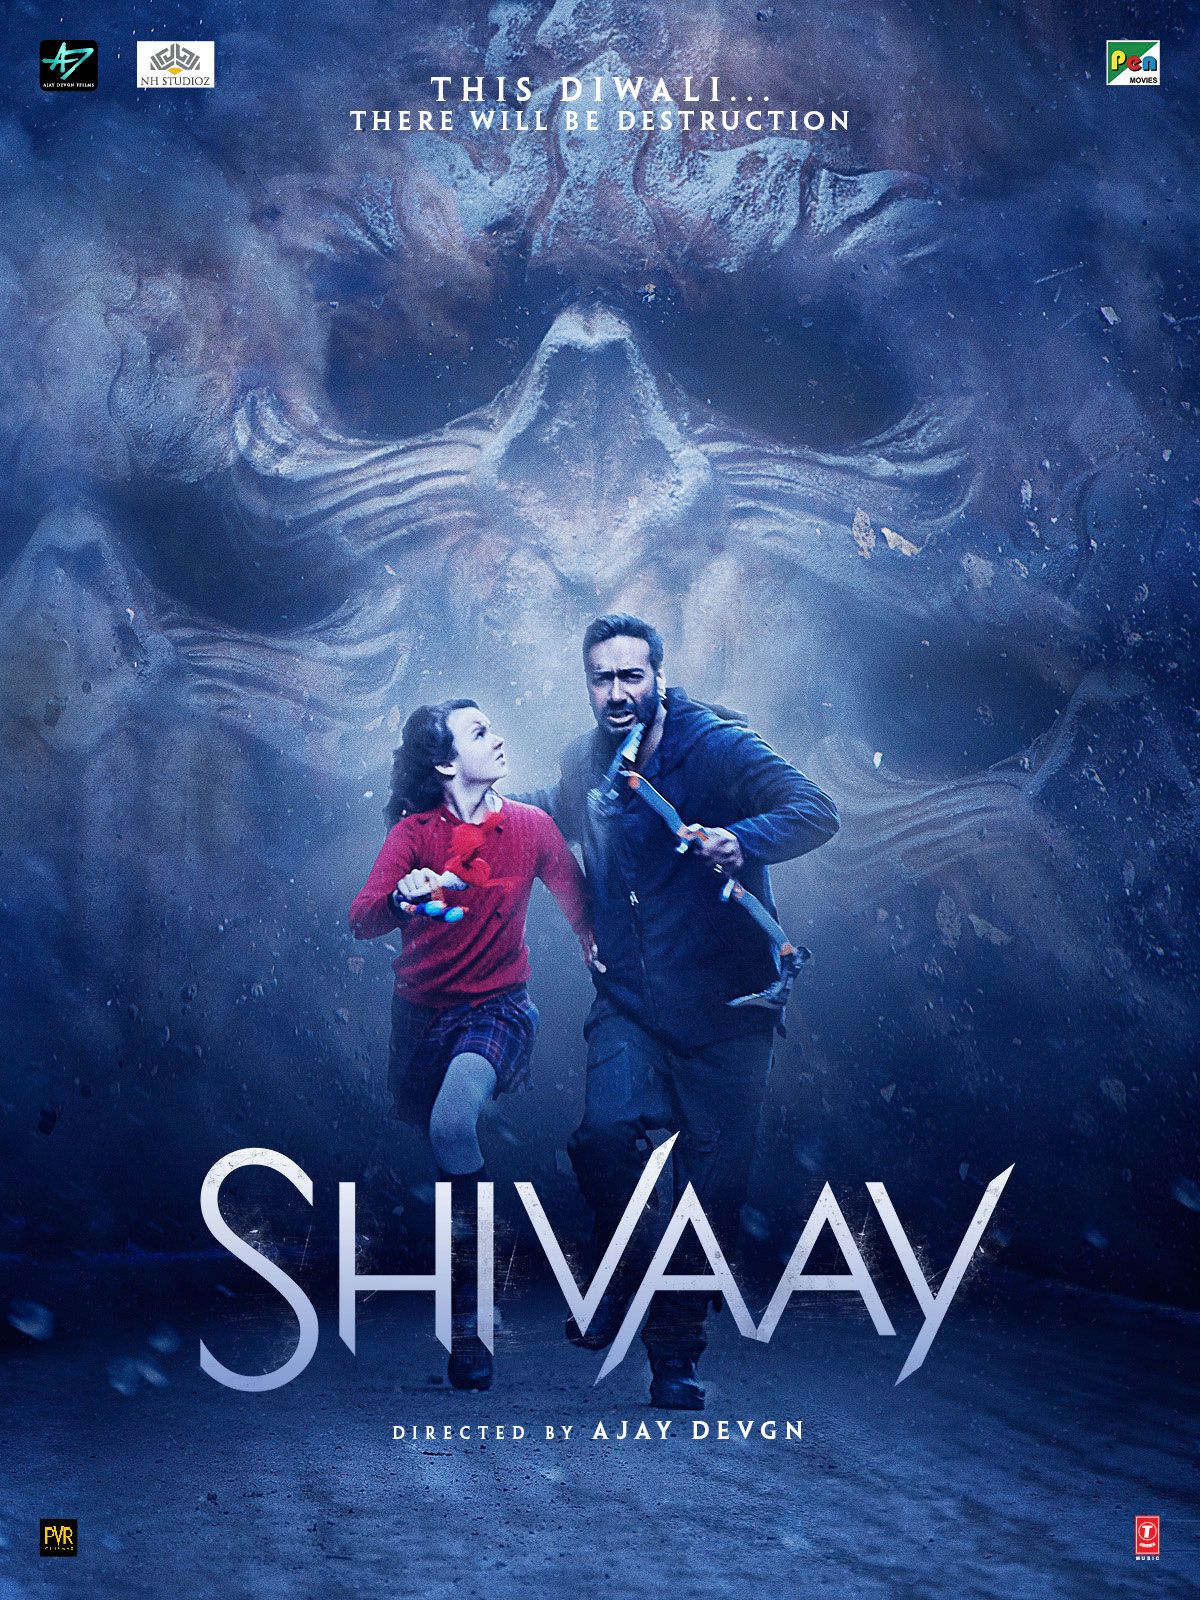 Shivaay (2016) - Photo Gallery - IMDb